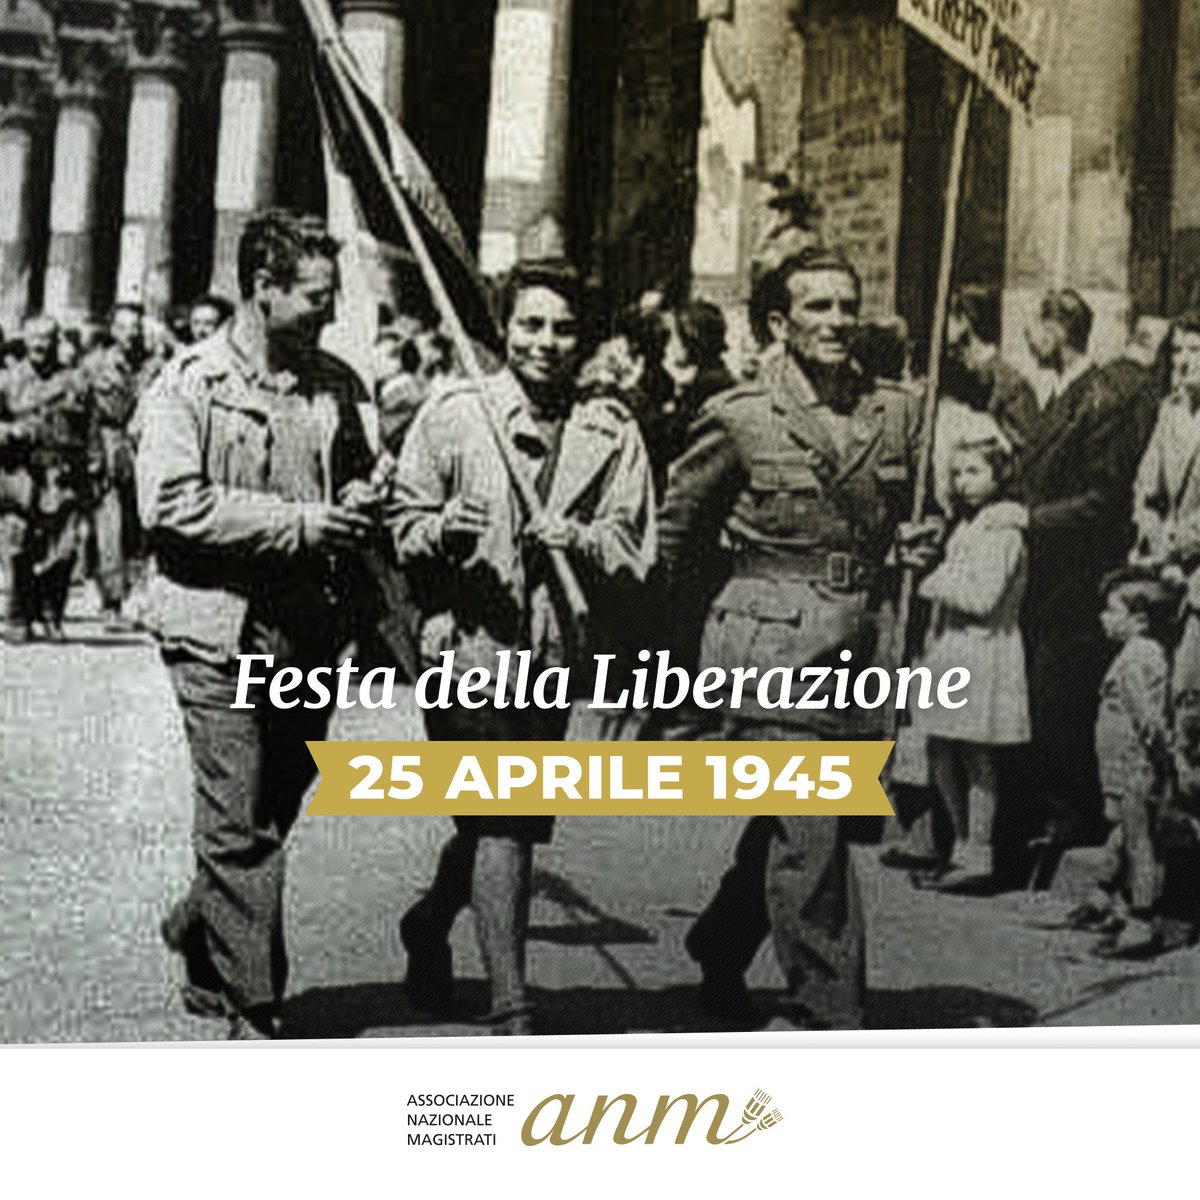 Oggi celebriamo la #Liberazione dell'Italia dall'occupazione nazifascista. La giornata del #25aprile ci ricorda i sacrifici e la strada percorsa per l’affermazione dei diritti fondamentali e dei nostri valori di pace, libertà e democrazia.